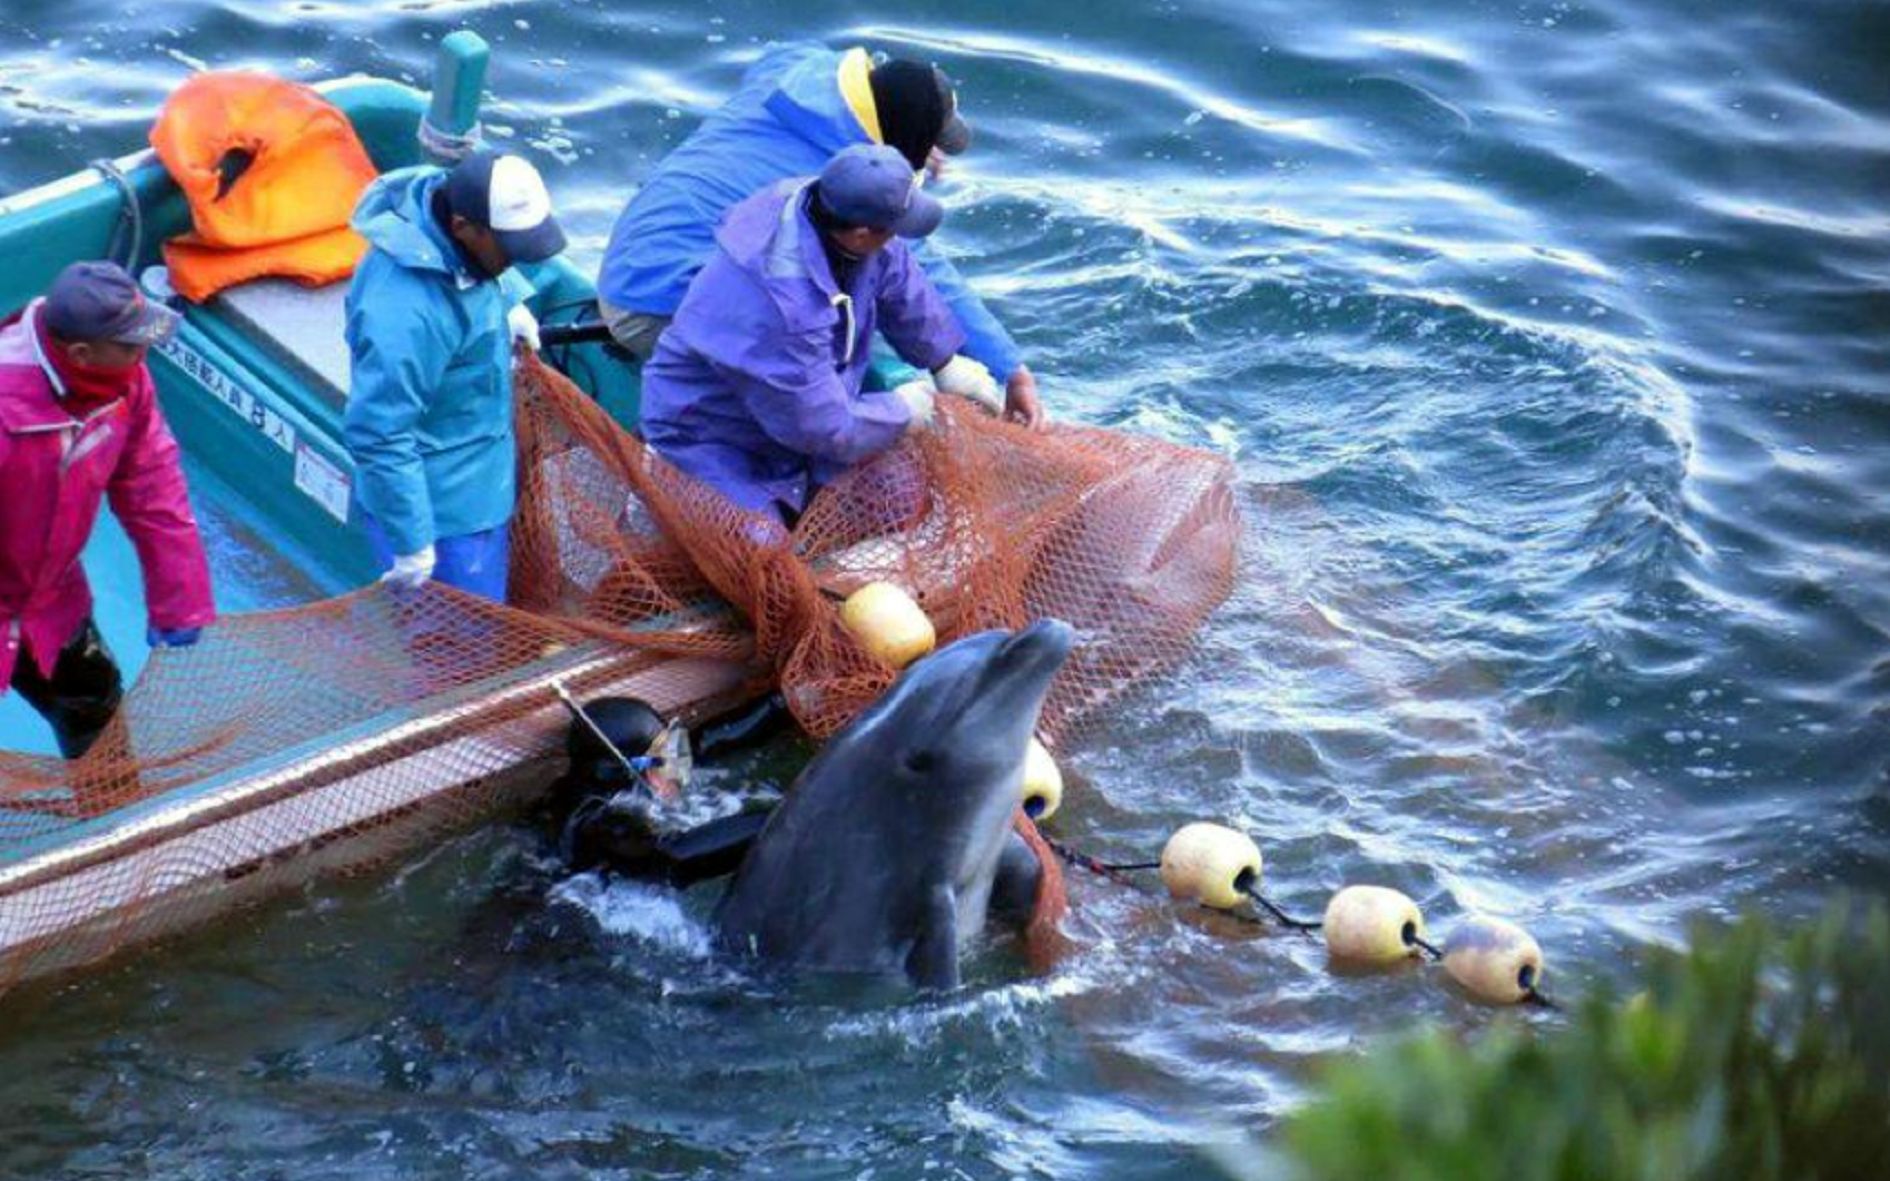 记者冒死偷拍的纪录片曝光日本海豚湾捕杀画面画面令人窒息